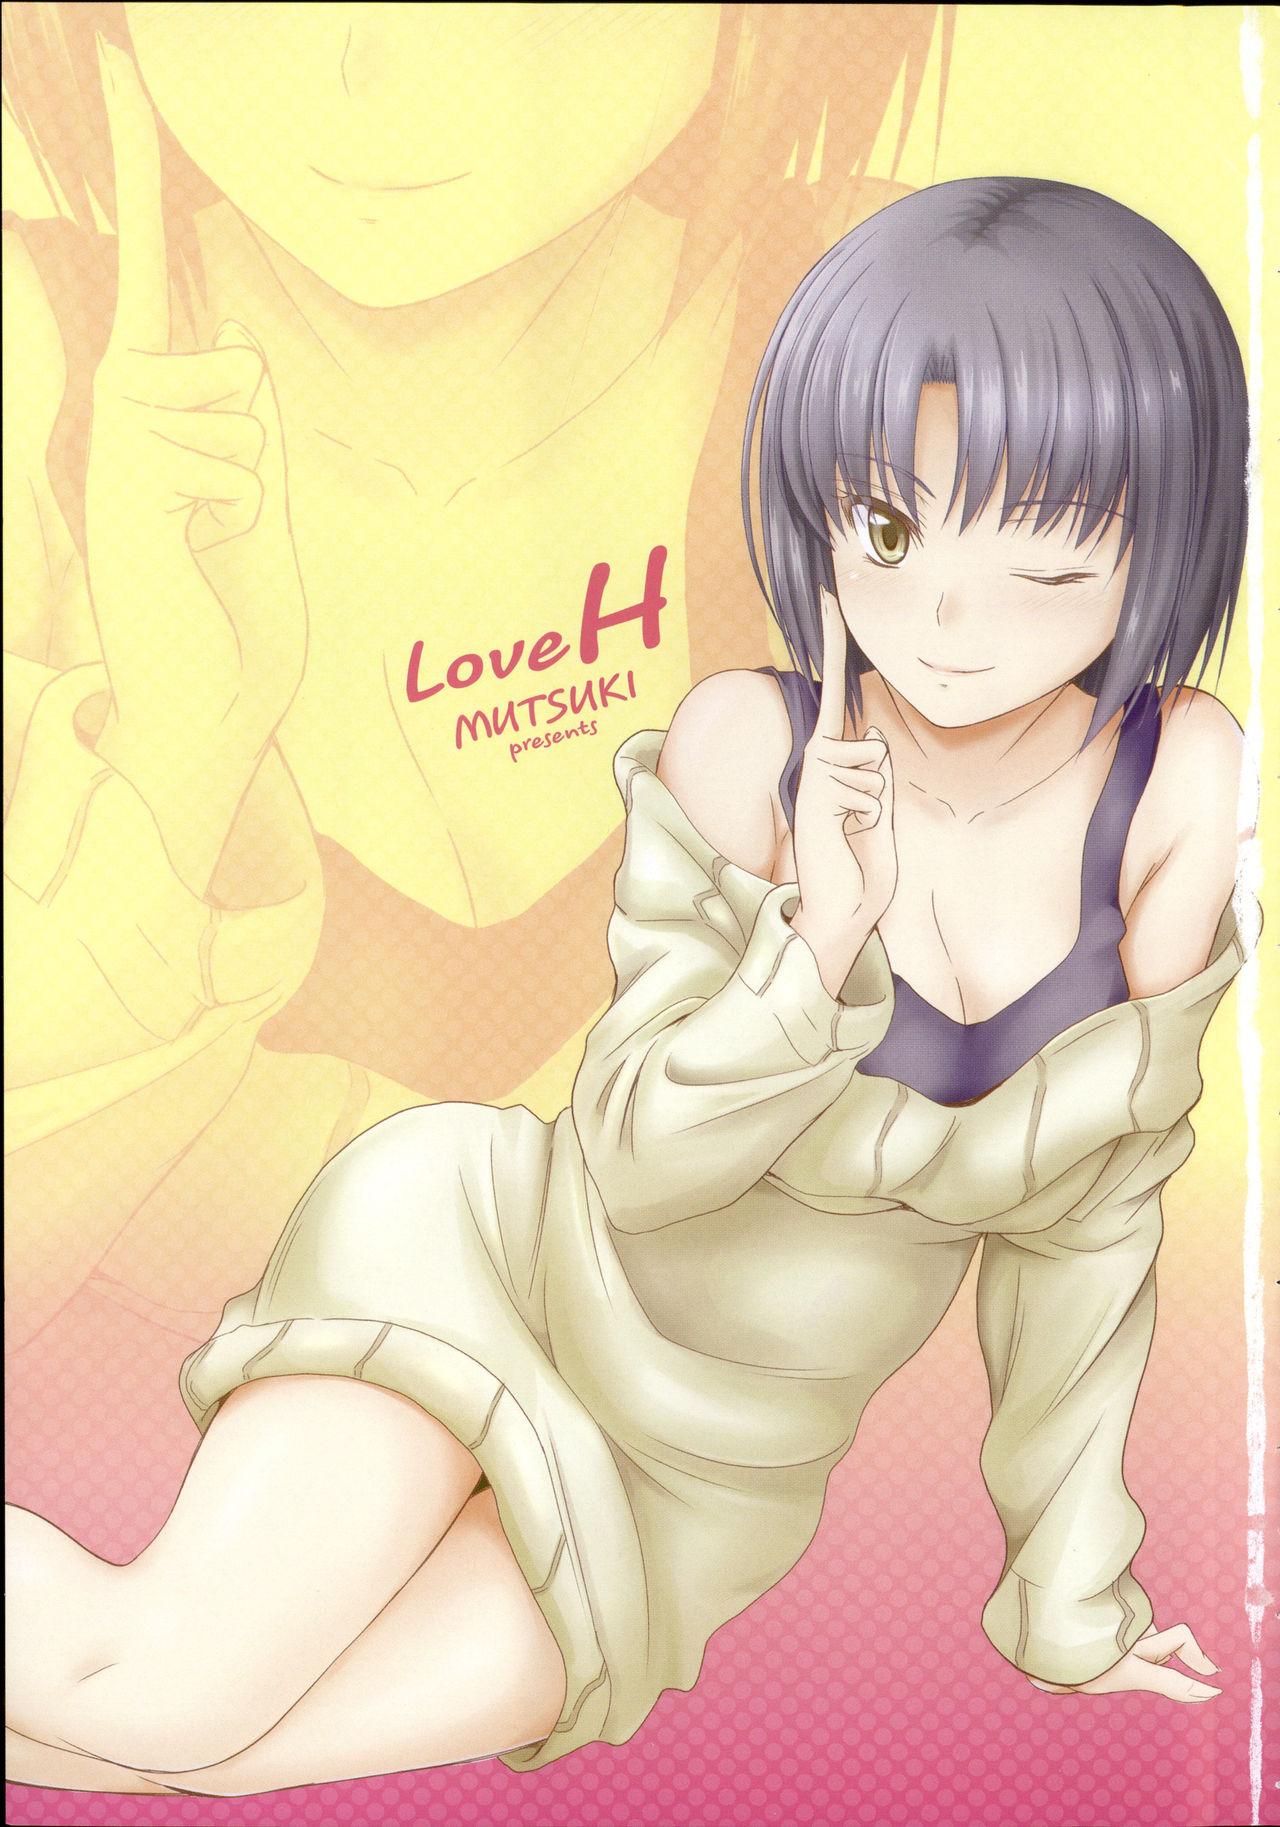 Koi Ecchi - Love H 8